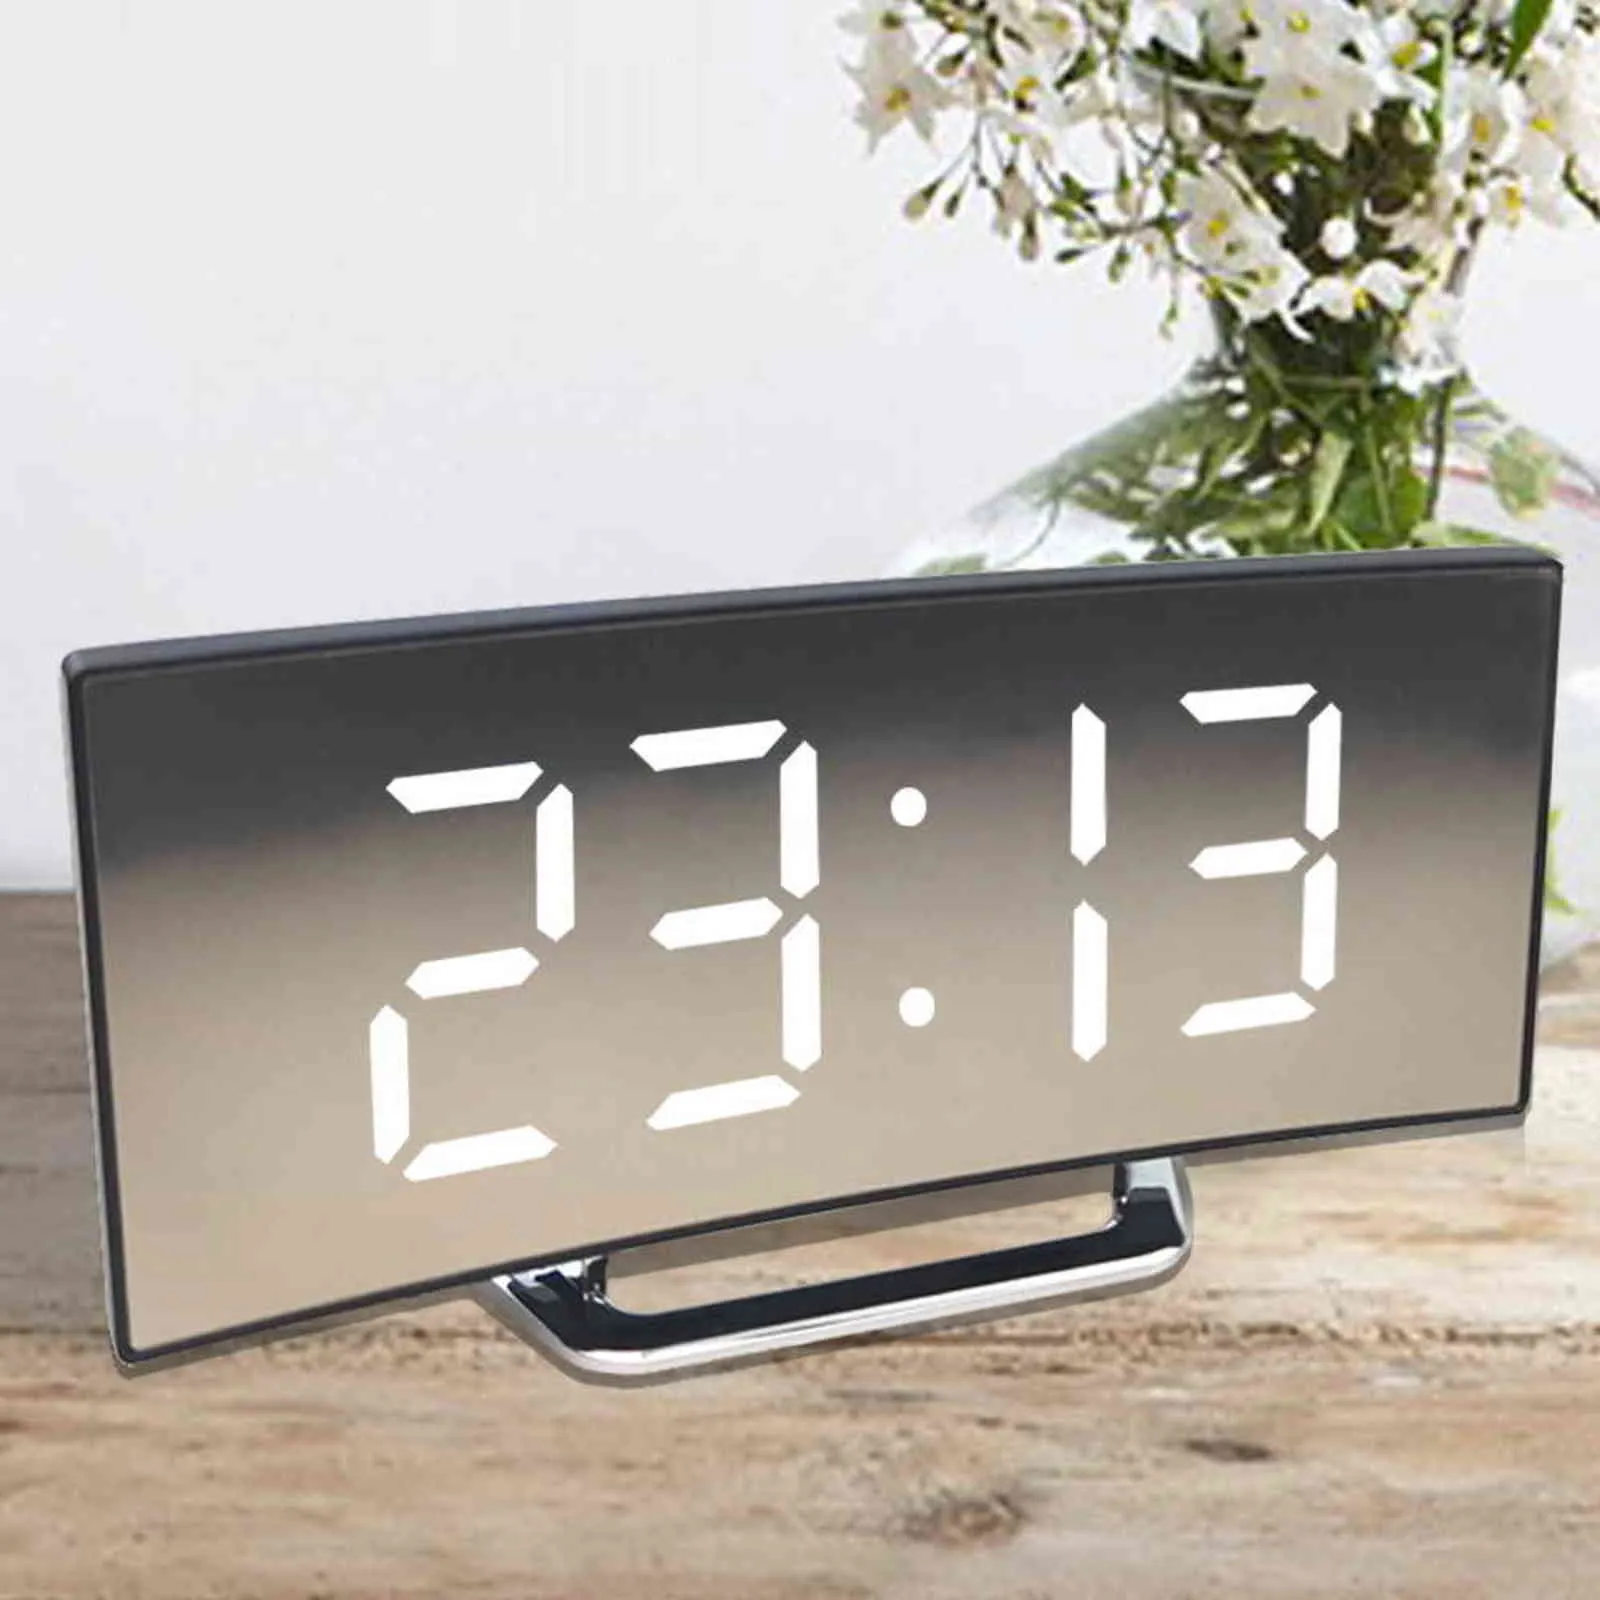 Digitalt väckarklocka Desk Clock Curved LED skärm väckarklockor för barn sovrum temperatur snooze funktion heminredning klockan 211111